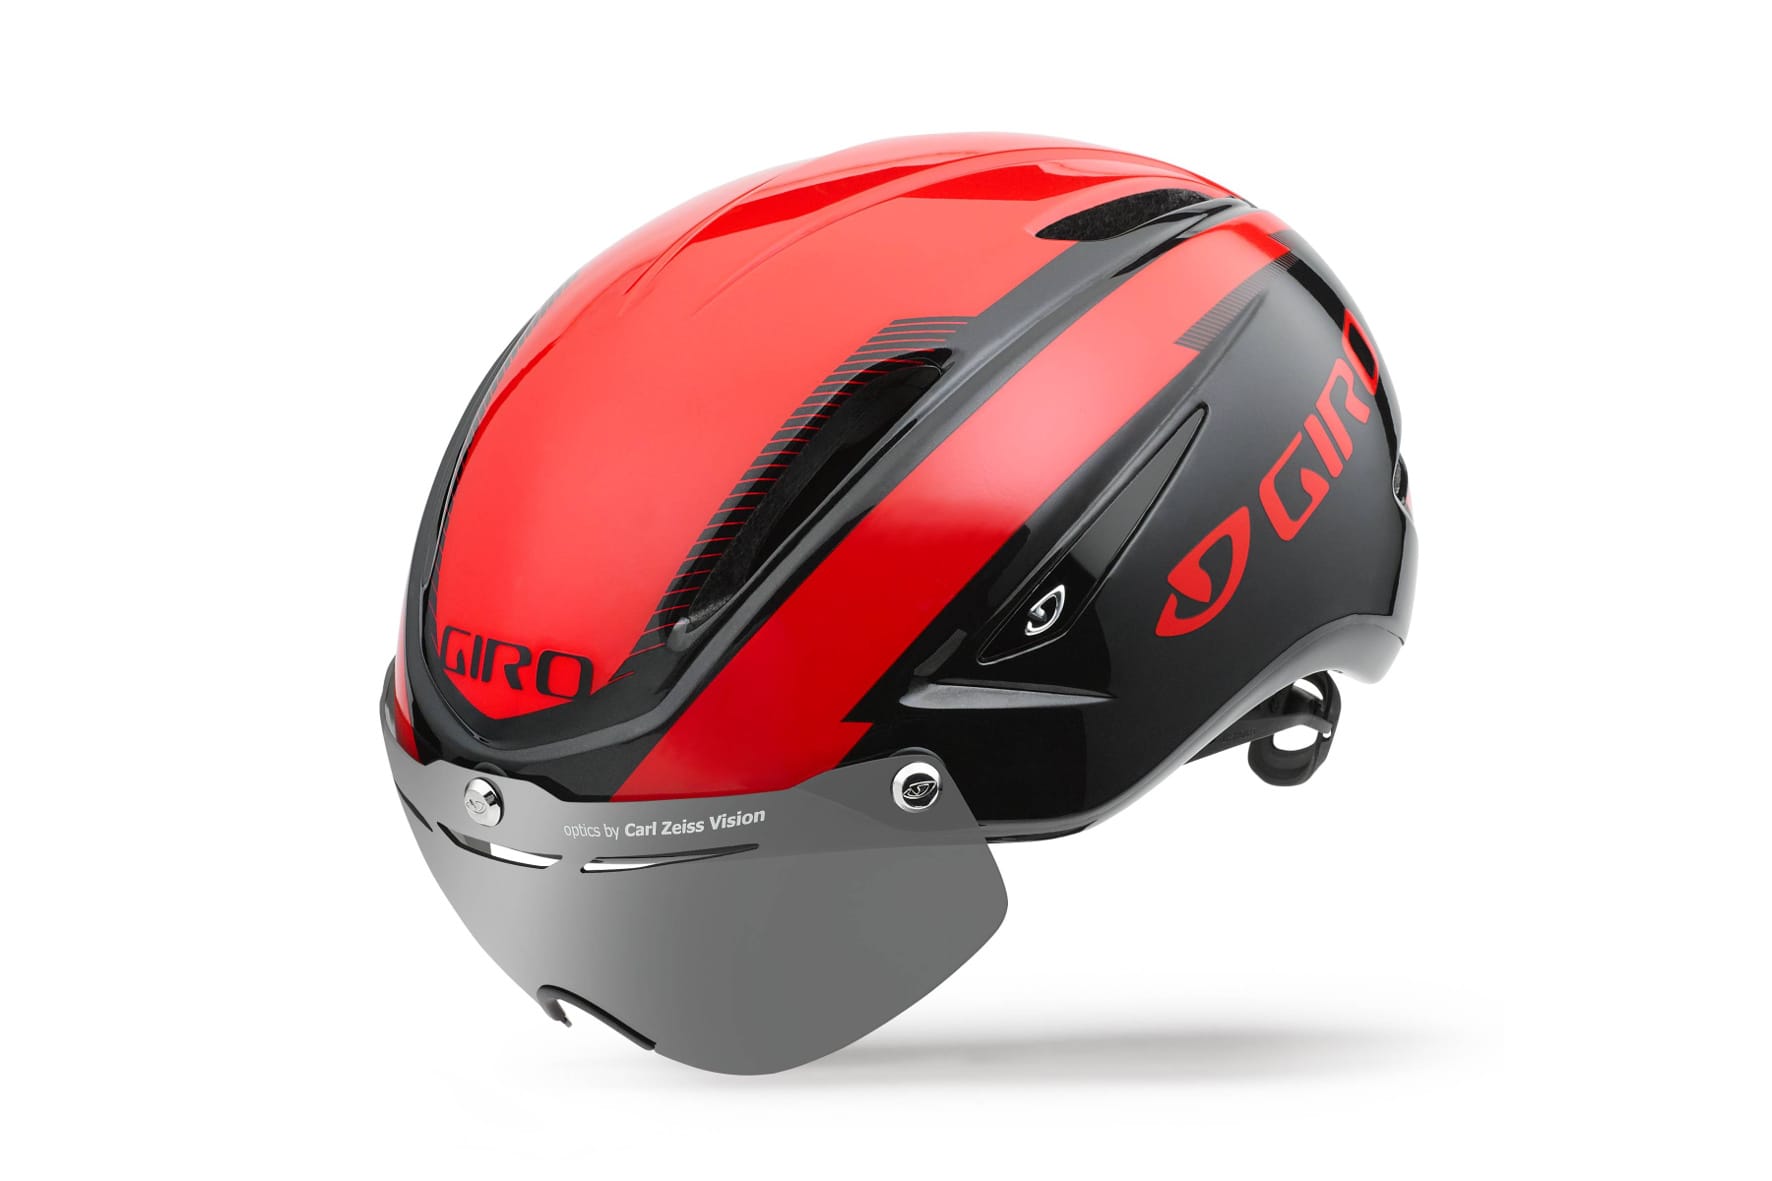 Edler Fahrrad-Helm mit integriertem magnetischen Visier: Das Modell Air Attack Shield von Giro für 249,99 Euro.